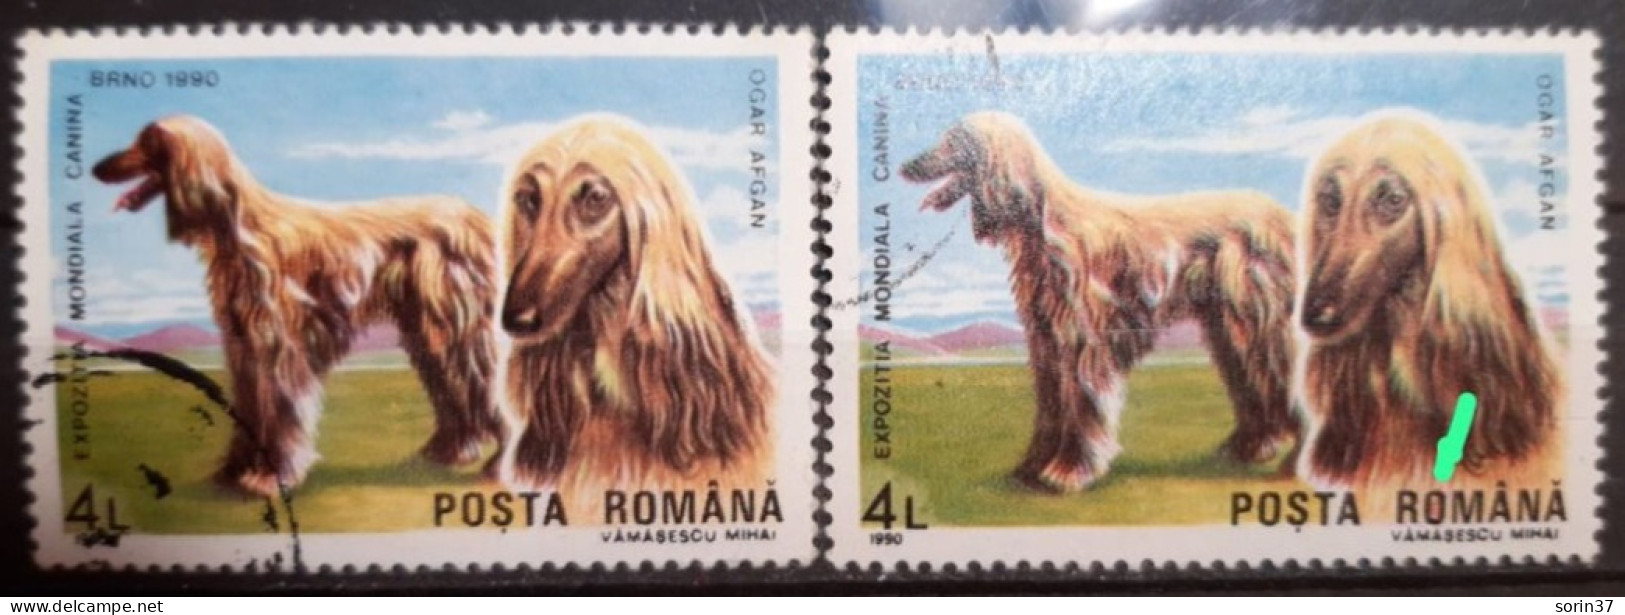 RUMANIA / ROMANIA / Error Año 1990 Yvert Nr. 3875 Usado O De Romania, Rojo Por Dentro - Variétés Et Curiosités